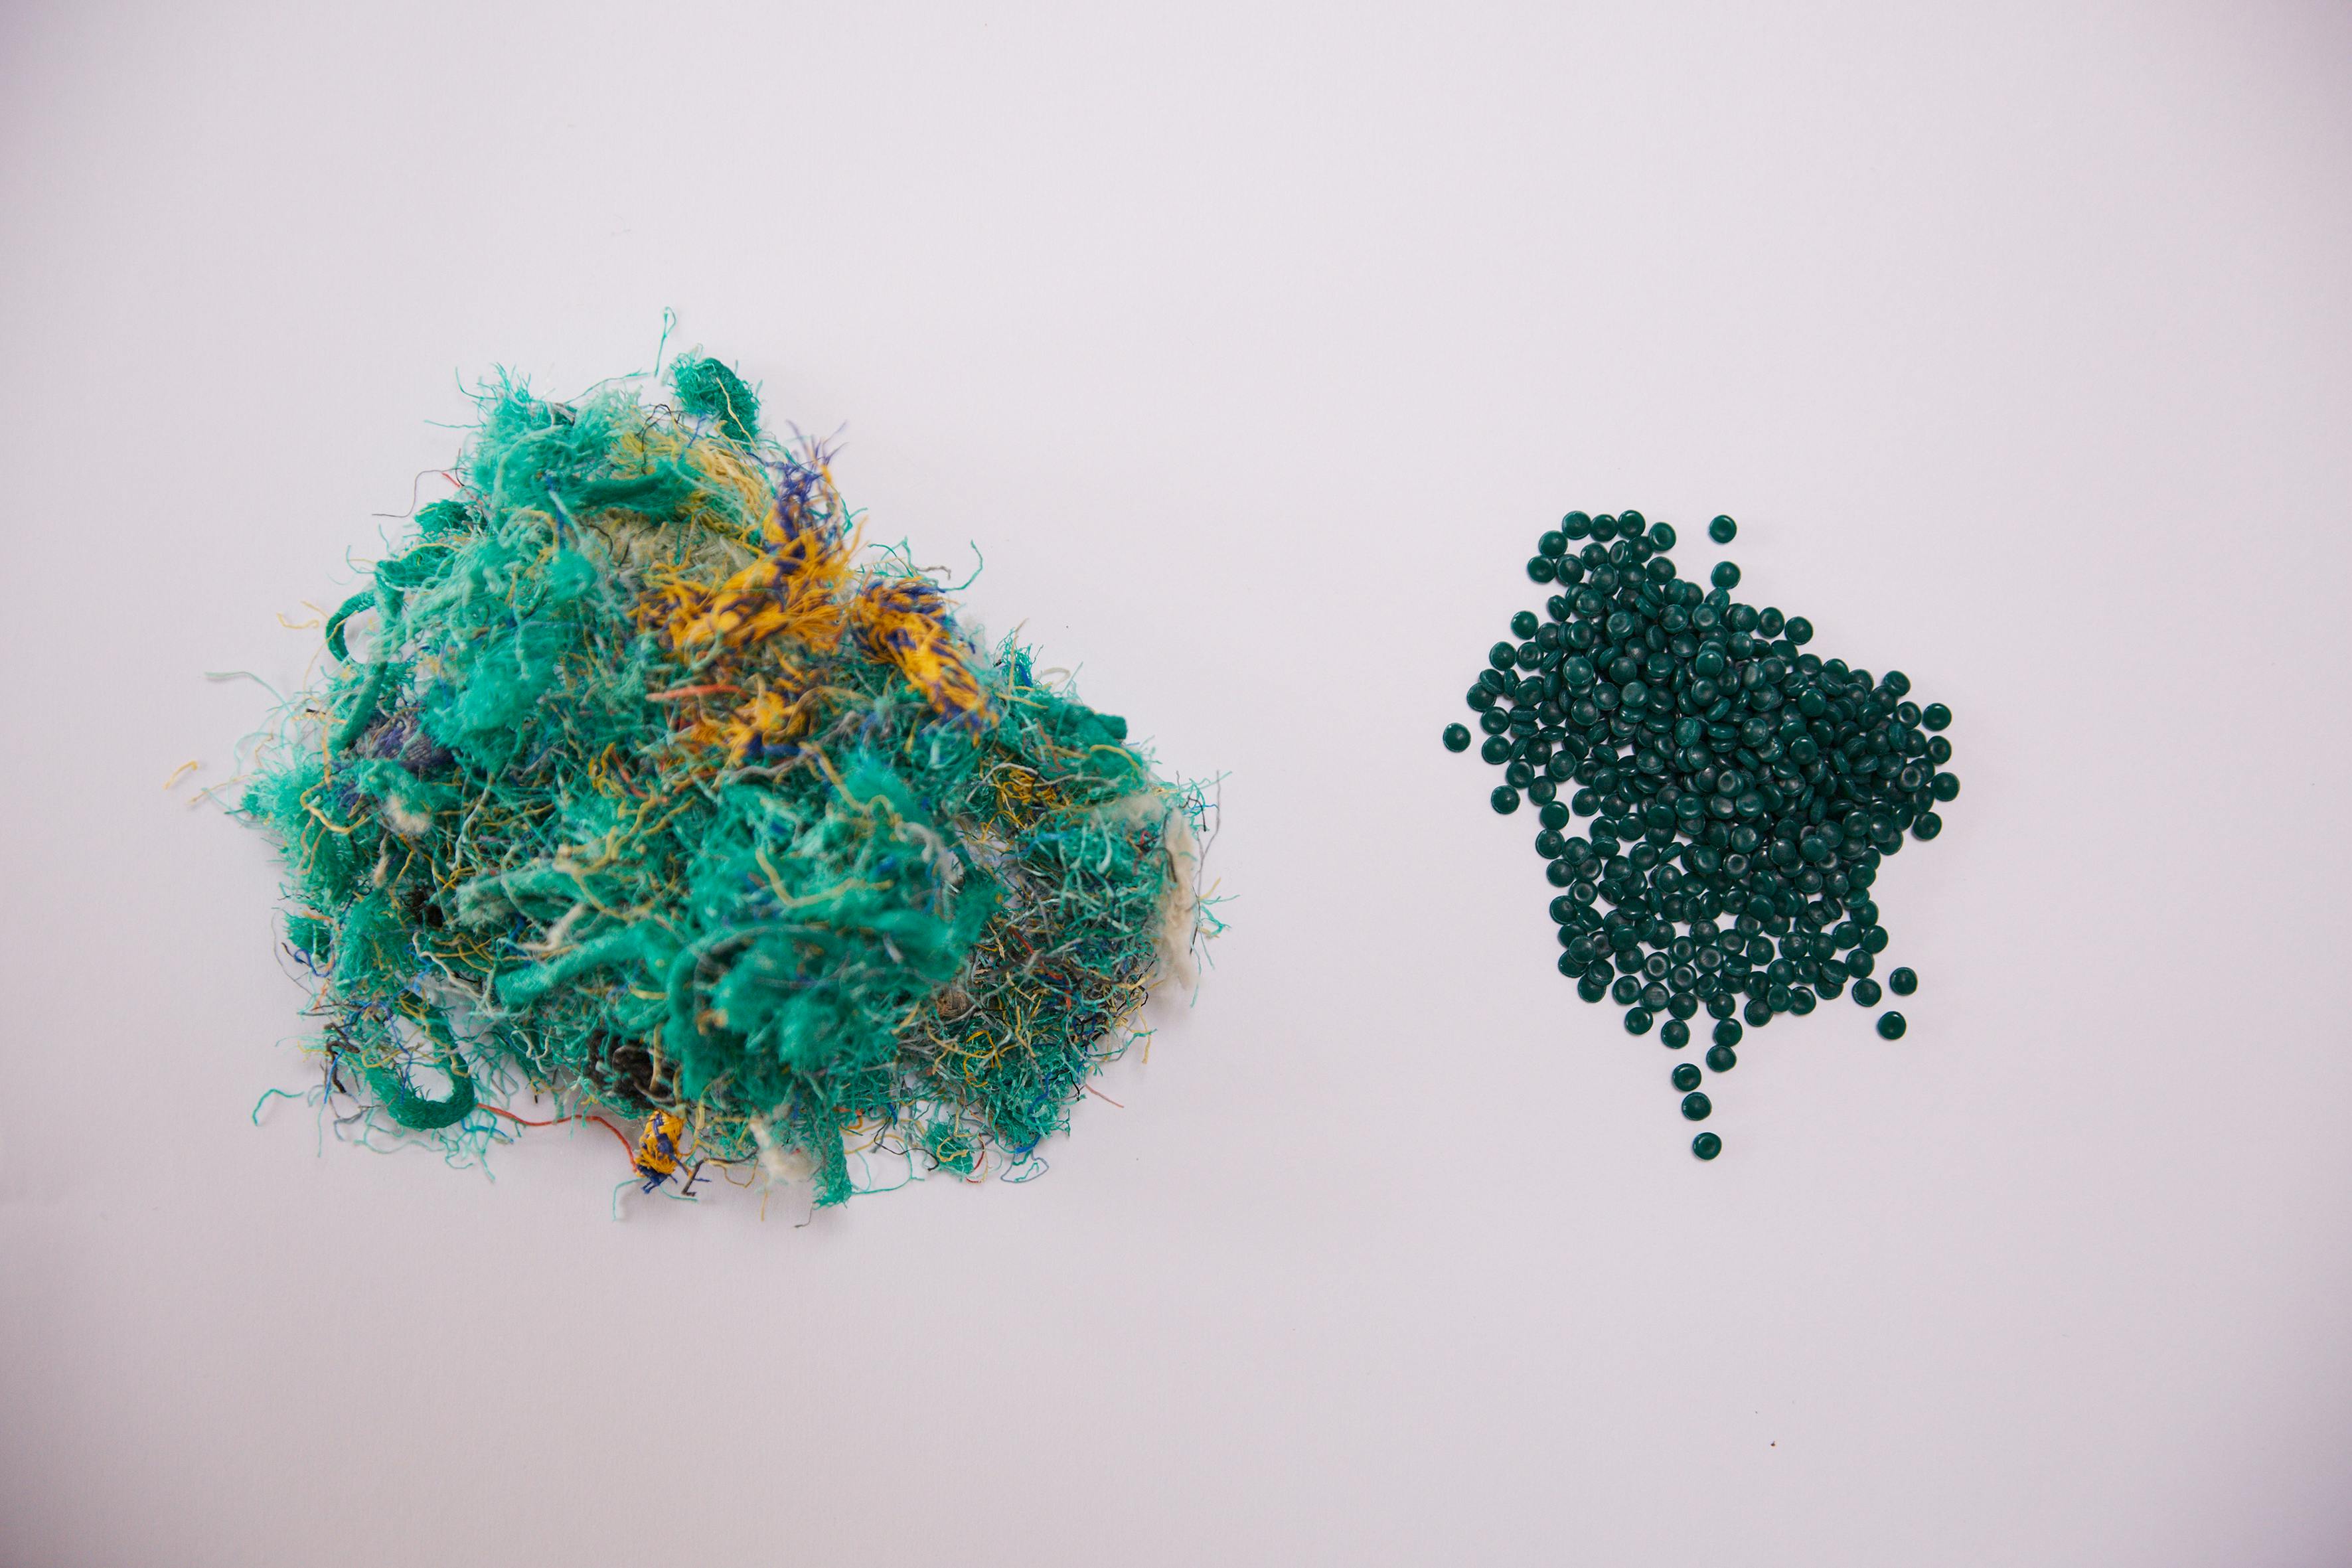 Recycled ocean plastic